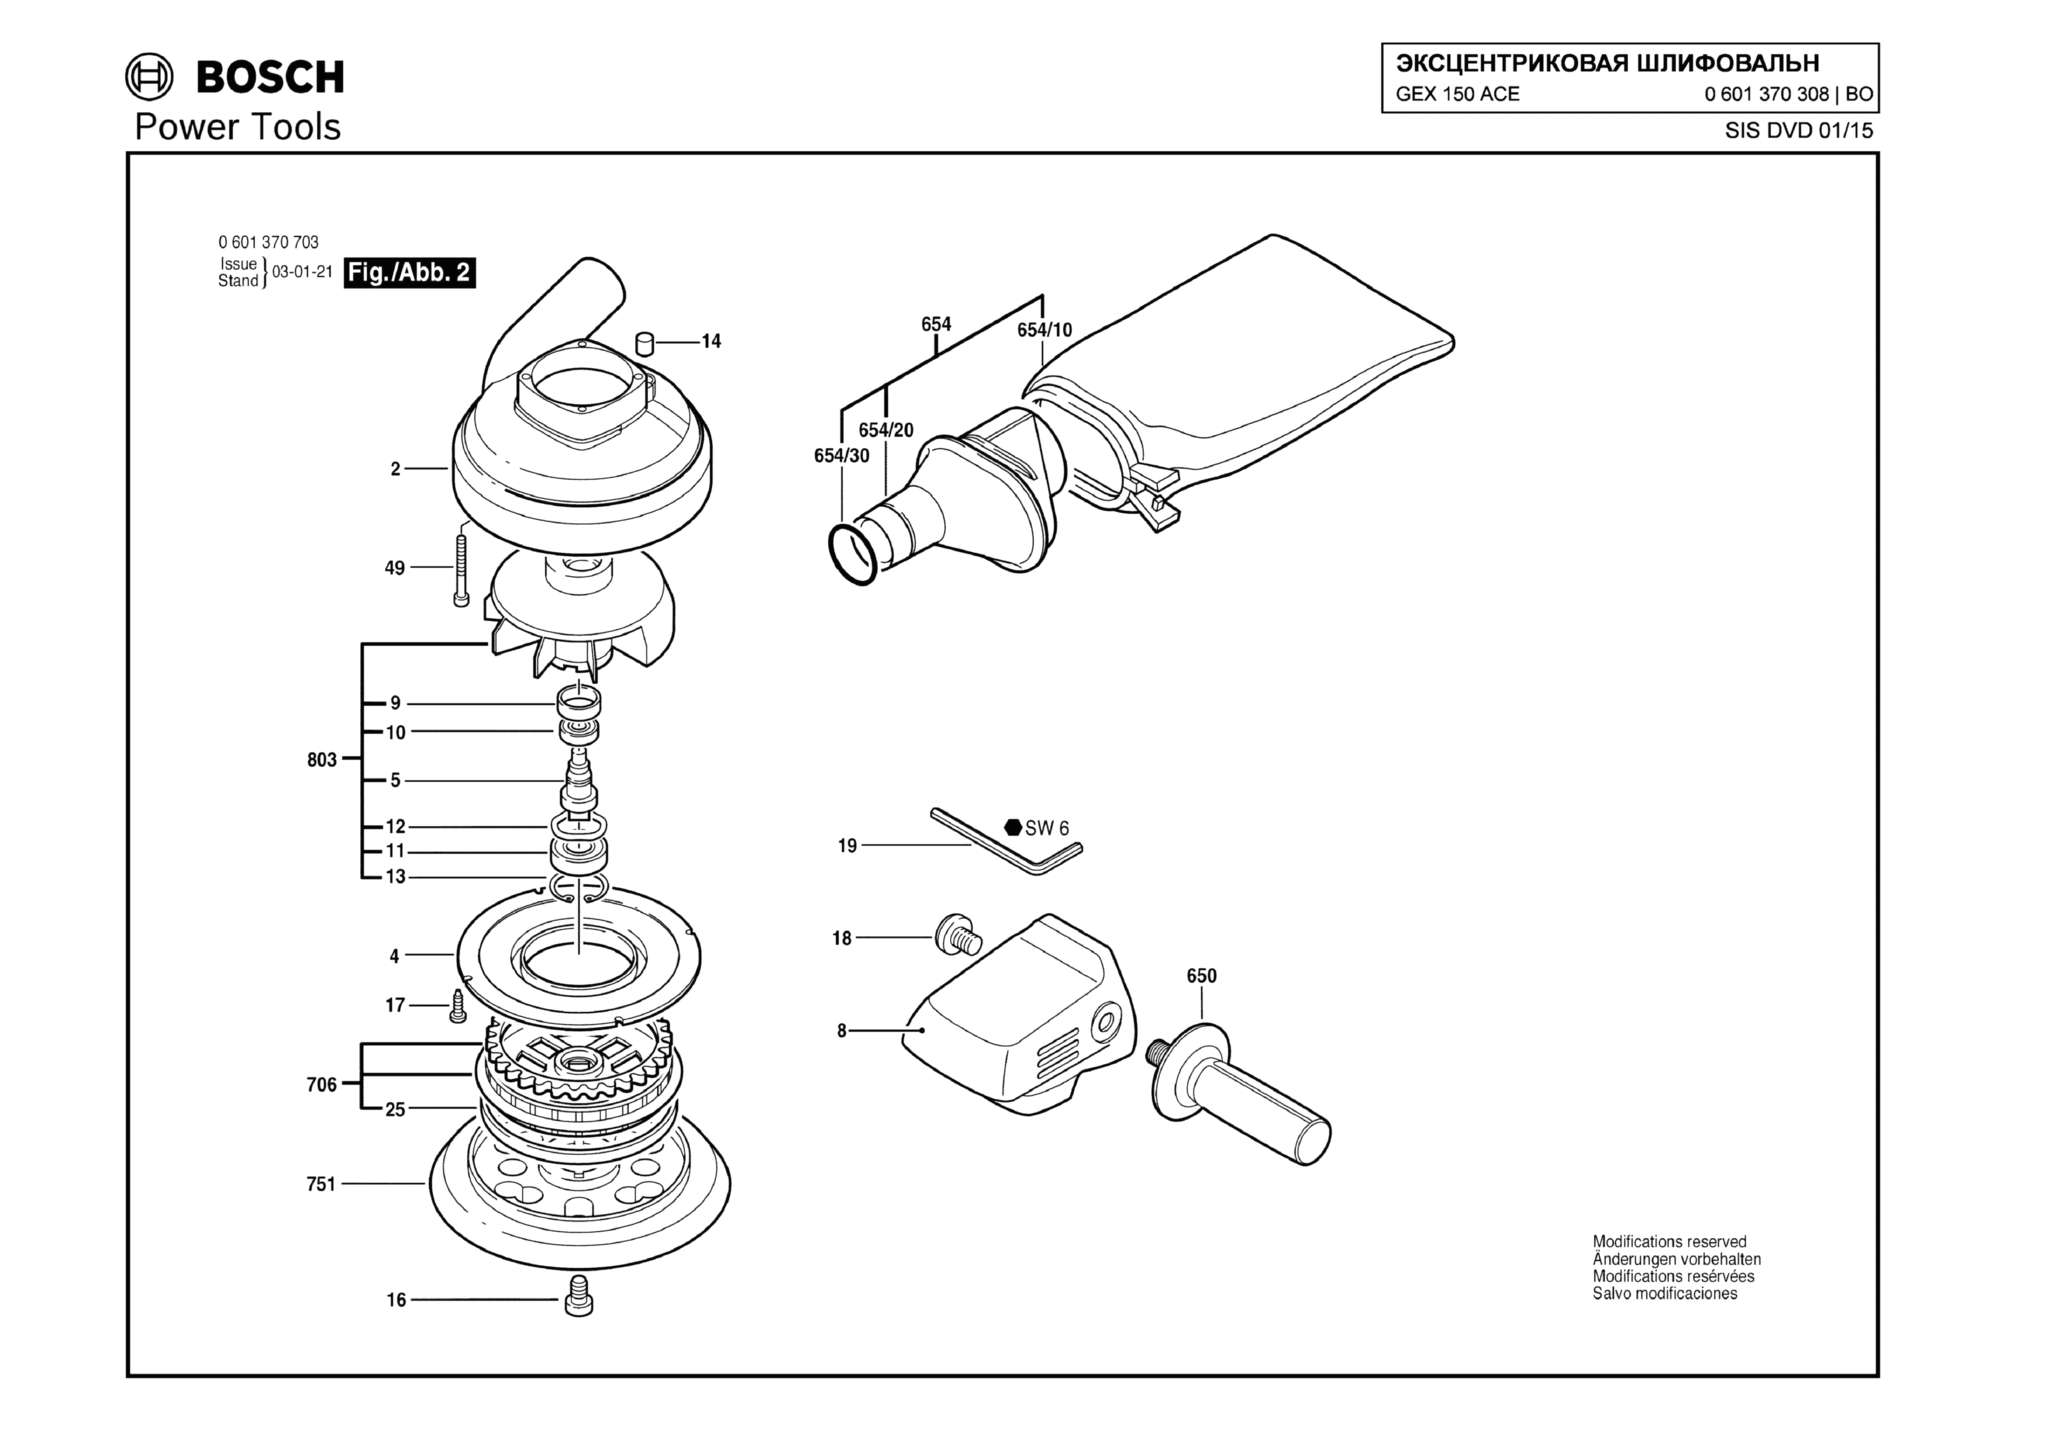 Запчасти, схема и деталировка Bosch GEX 150 ACE (ТИП 0601370703) (ЧАСТЬ 2)